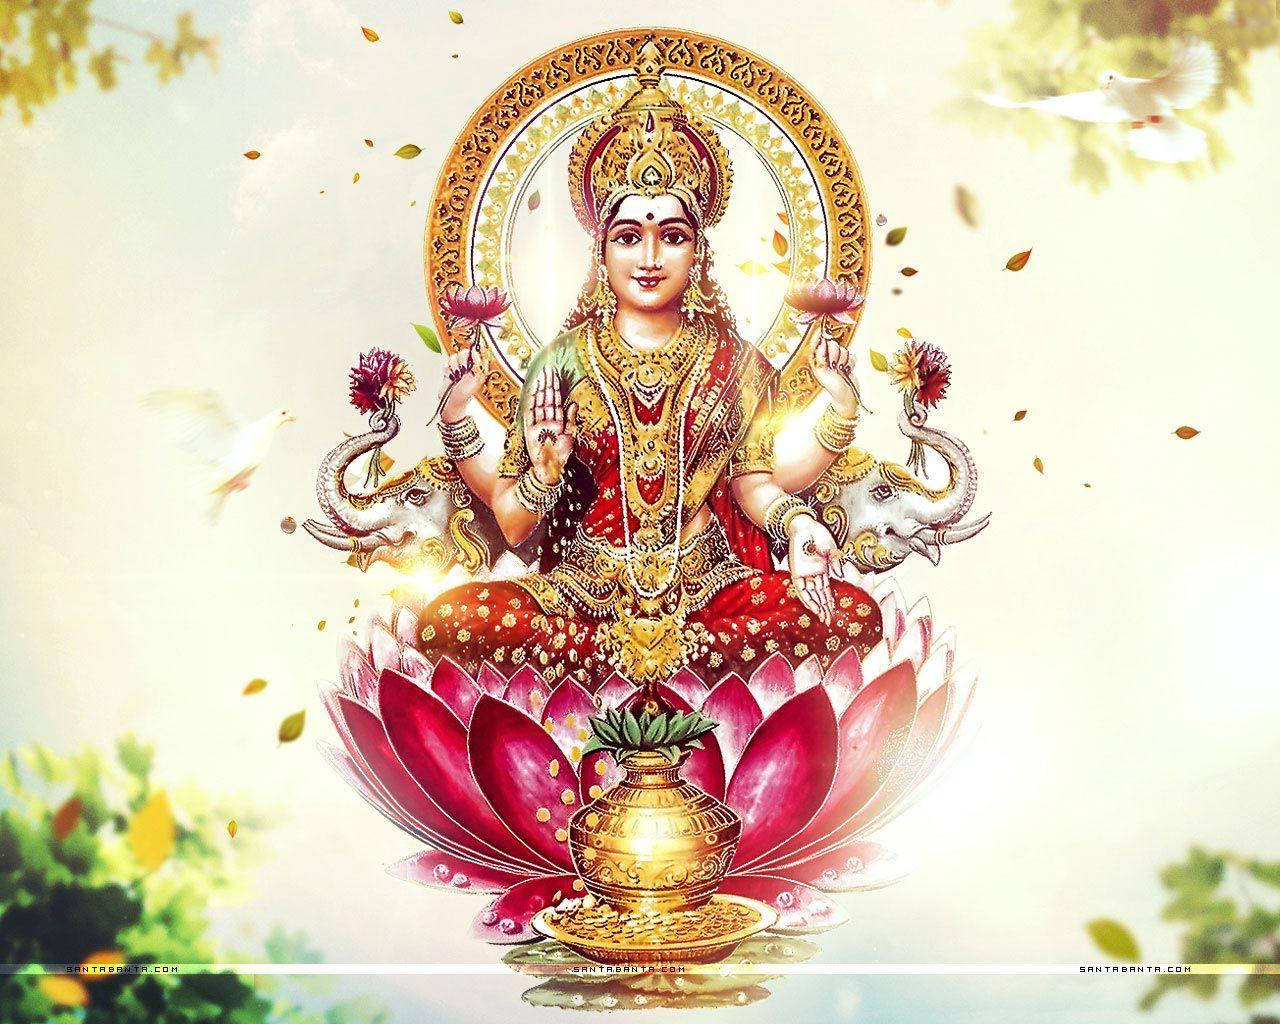 Free Goddess Lakshmi Hd Wallpaper Downloads, [100+] Goddess Lakshmi Hd  Wallpapers for FREE 